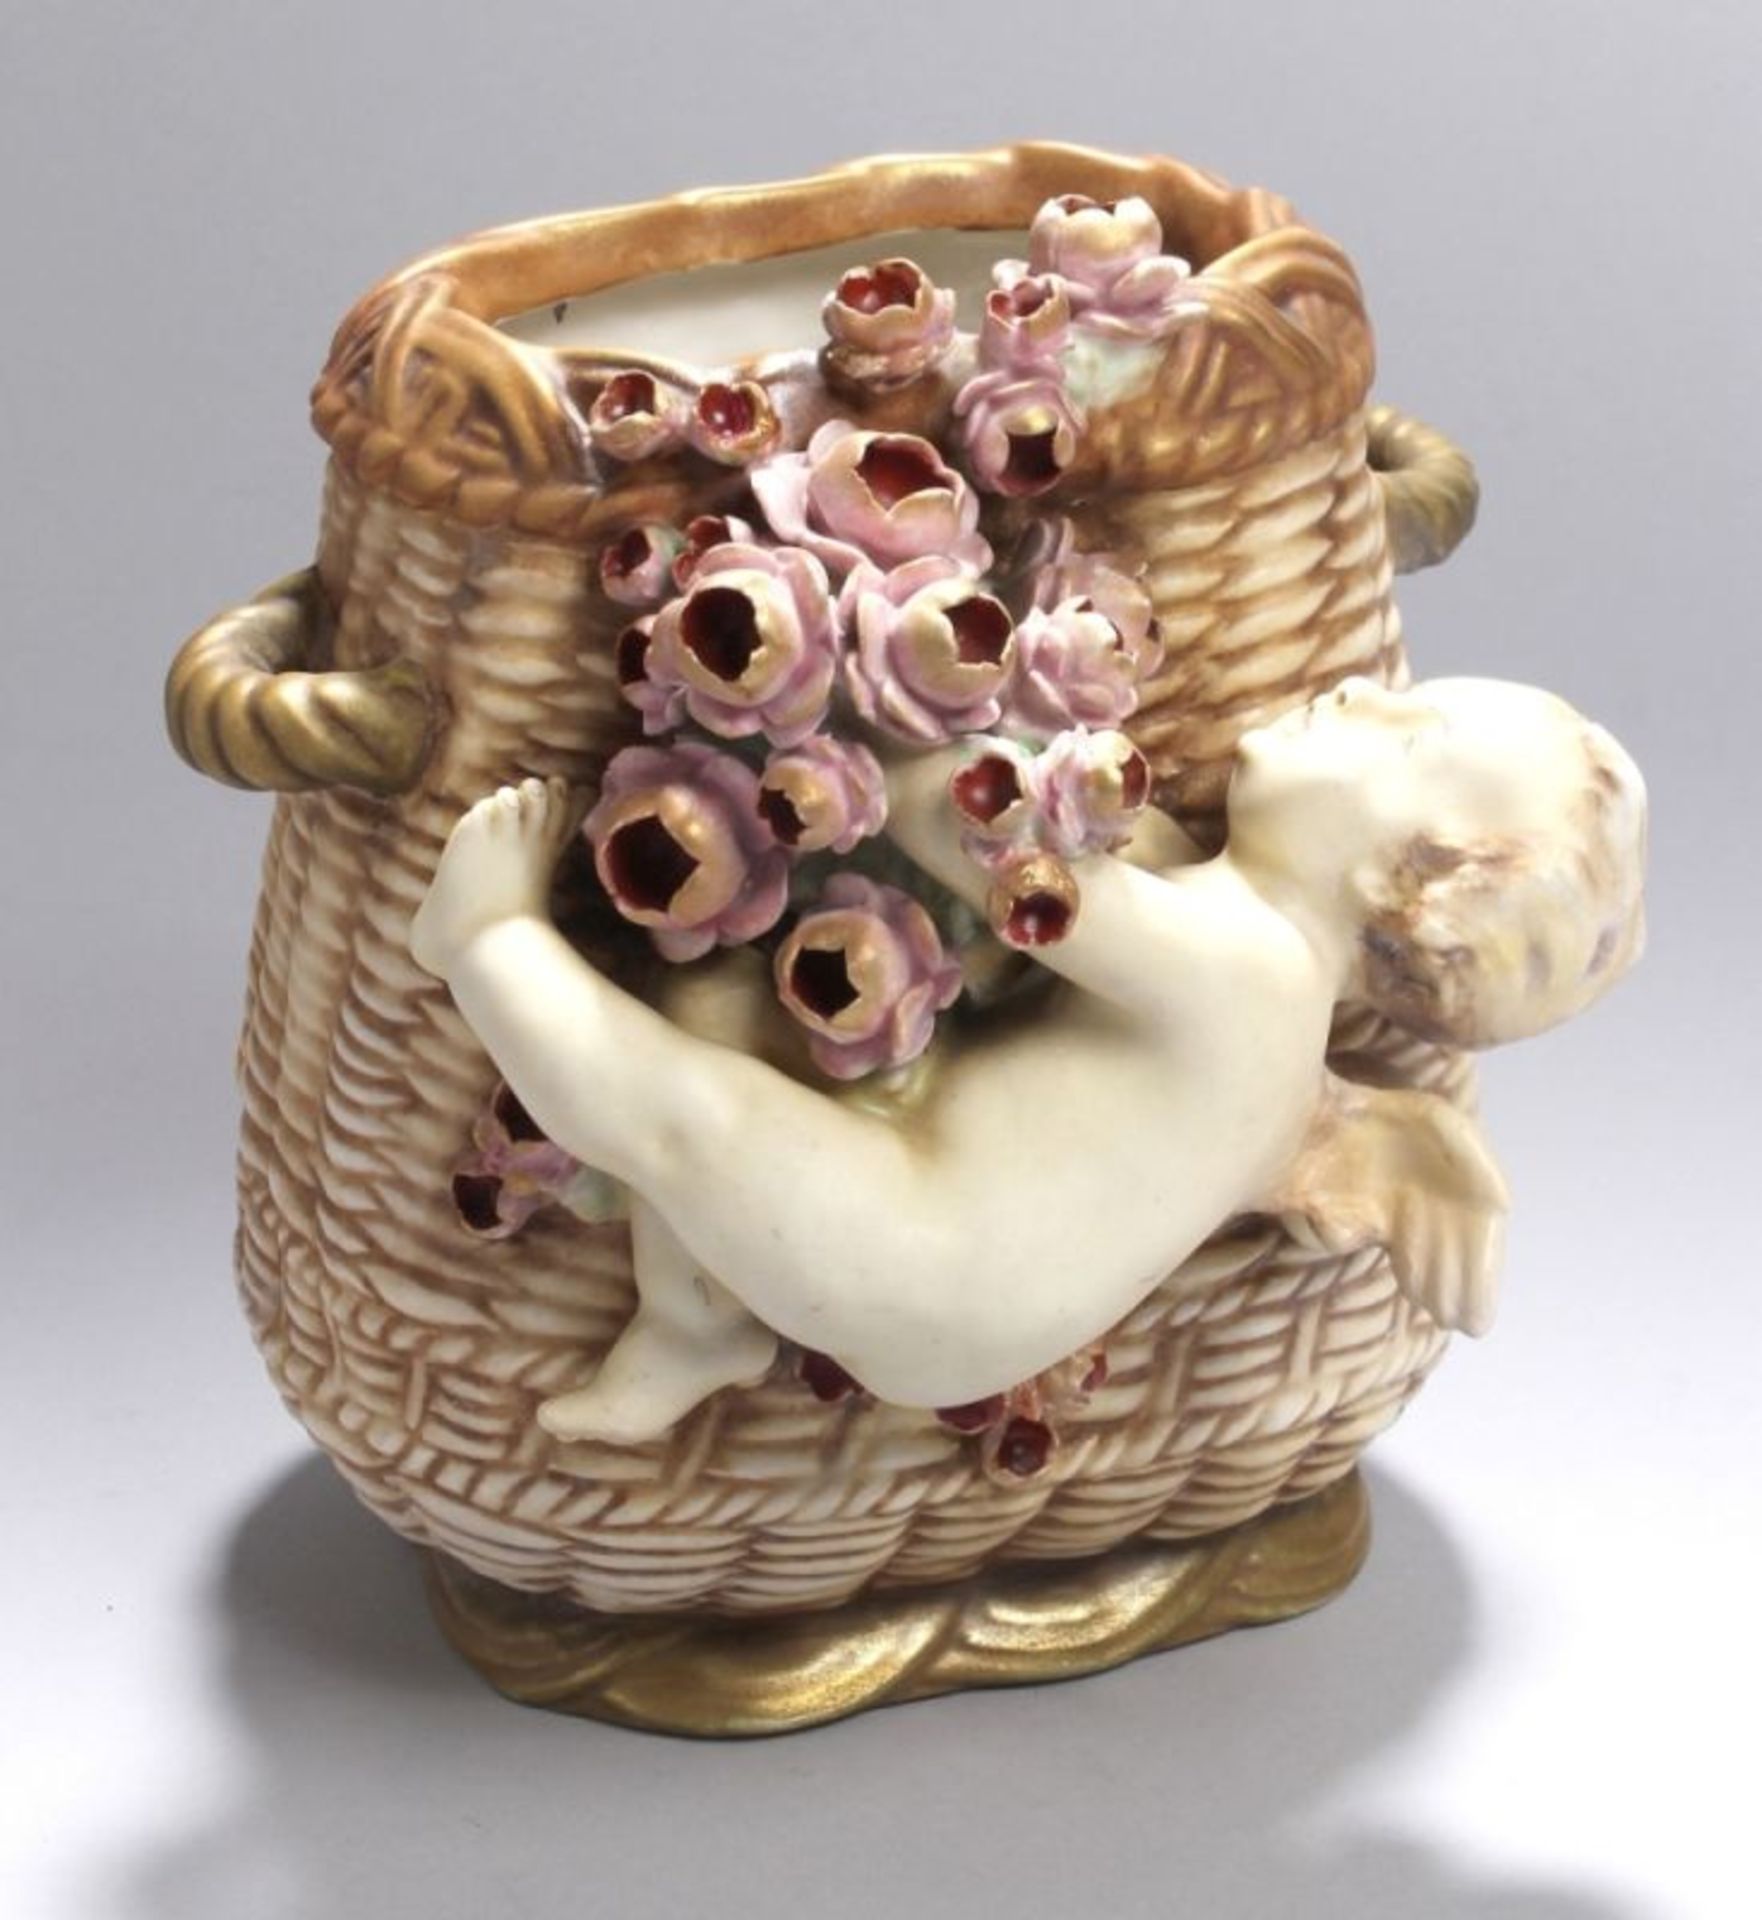 Keramik-Ziervase, "Amor mit Rosen", Amphora-Werke, Riessner, Stellmacher & Kessel,